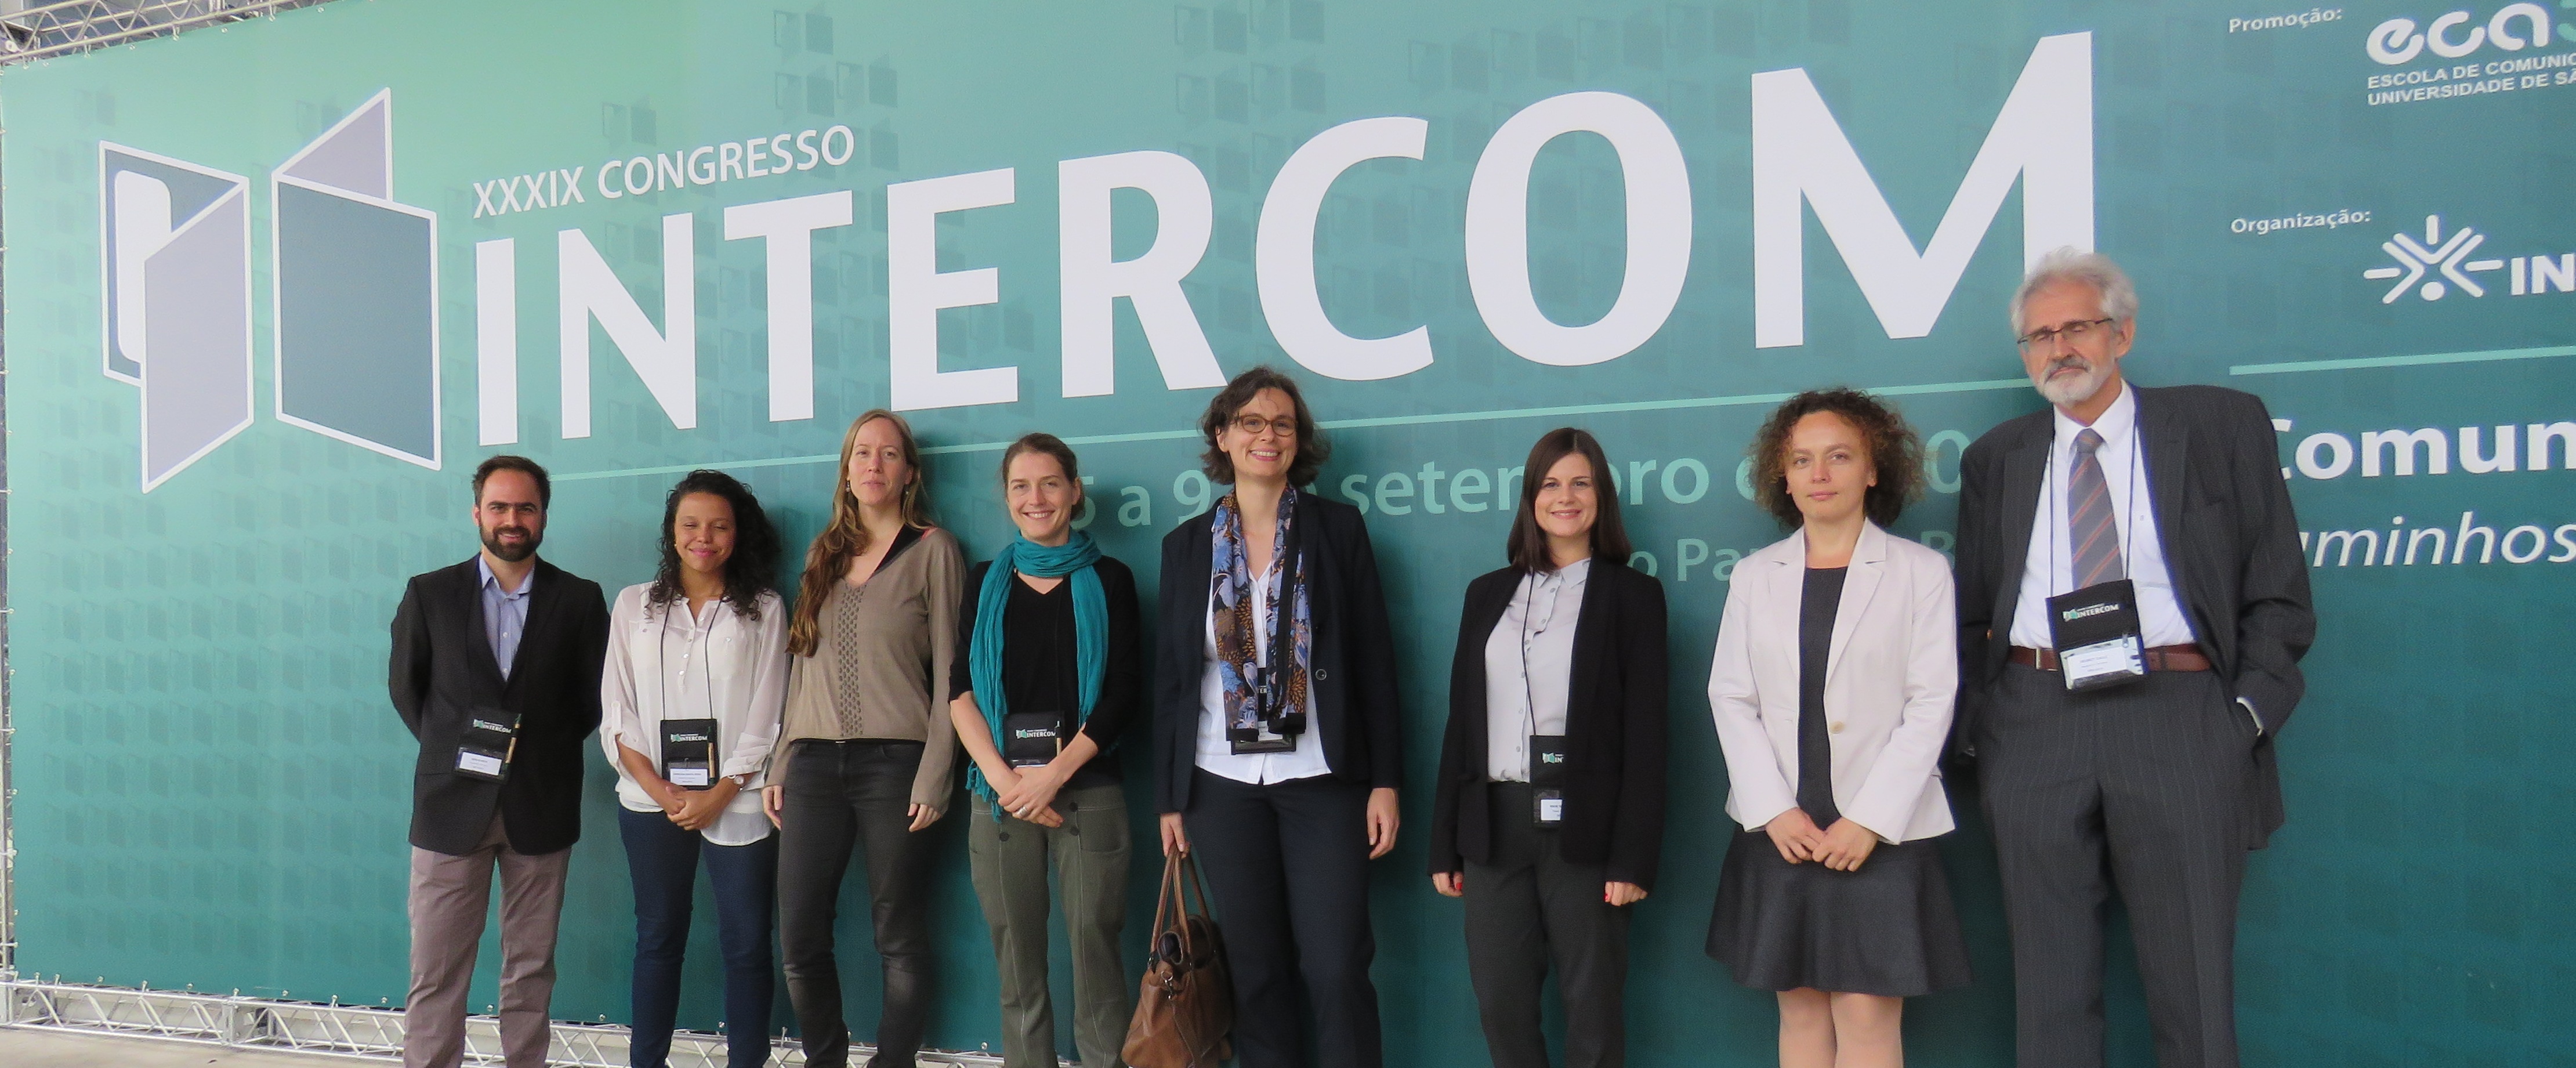 Oito representantes (homens e mulheres) de instituições alemãs se posicionam em frente a um banner com o logotipo da INTERCOM